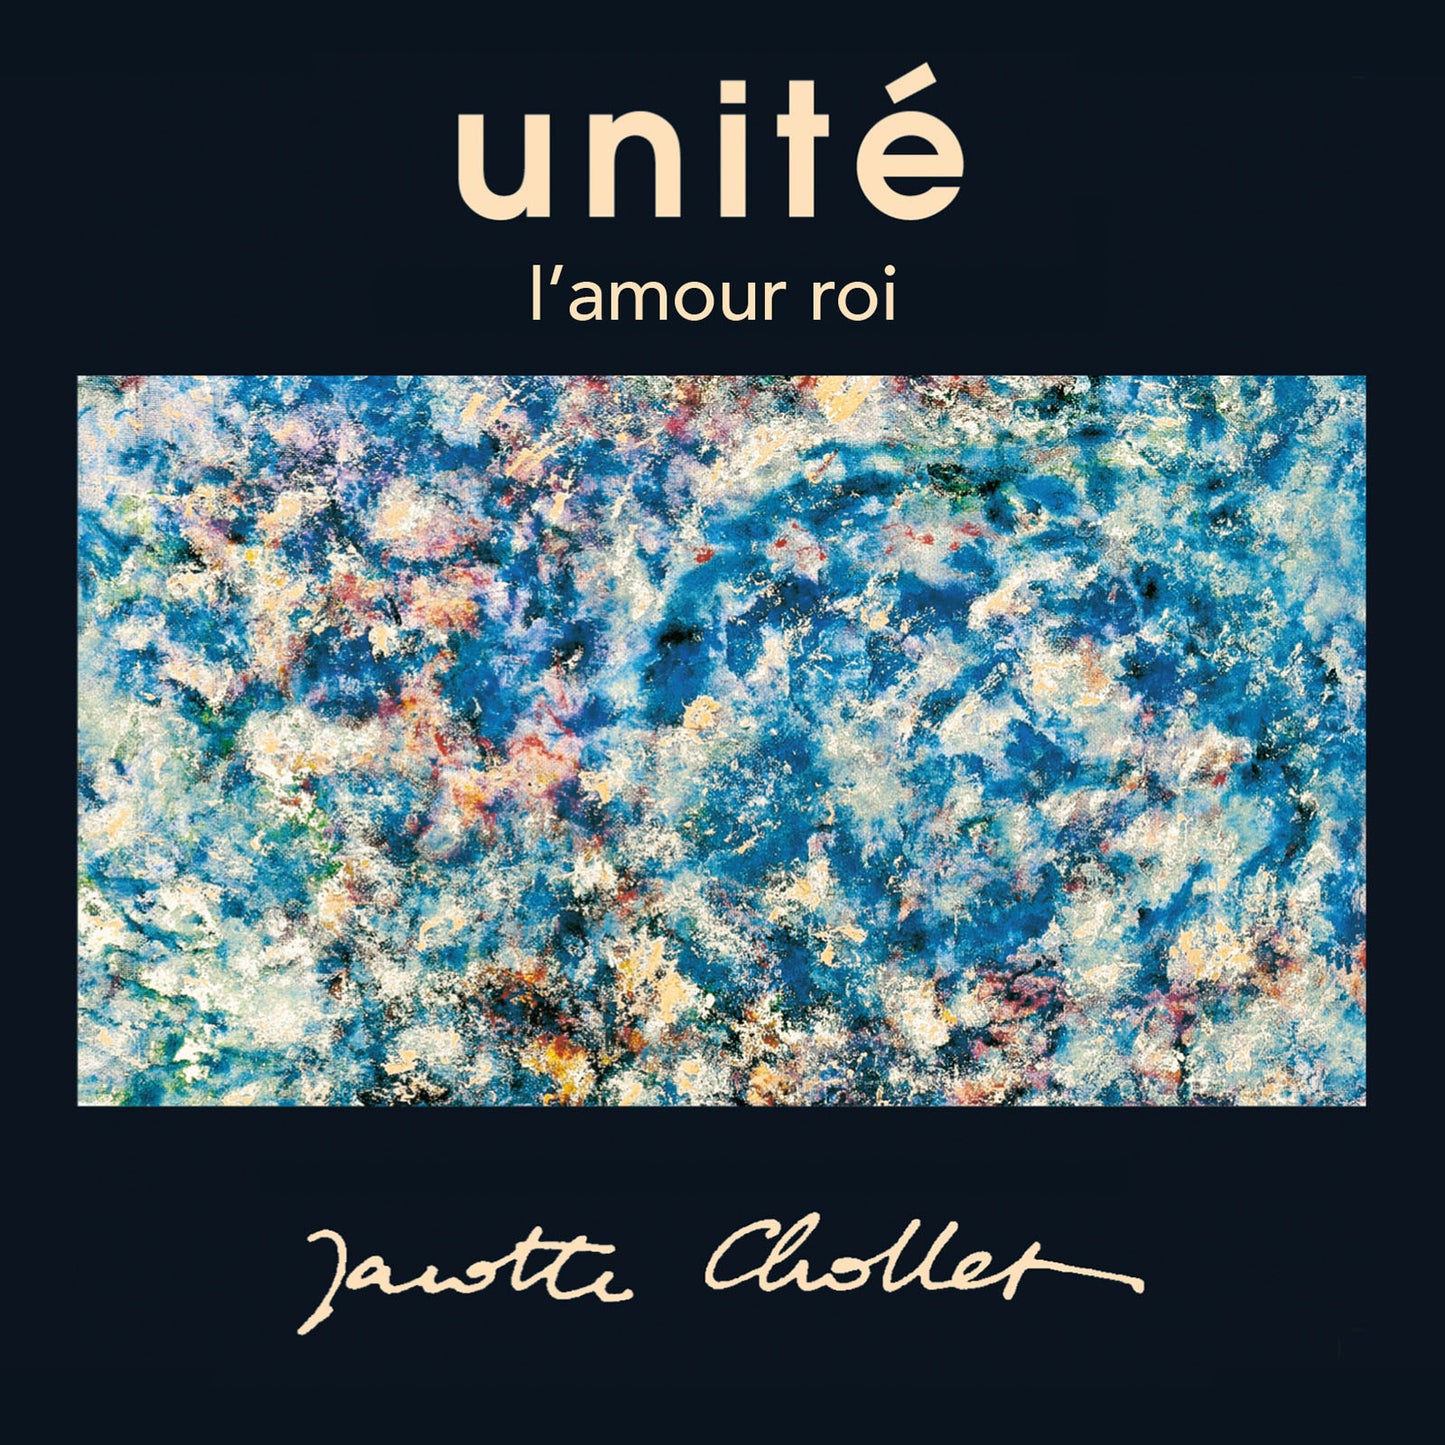 Unite - 2 albums set